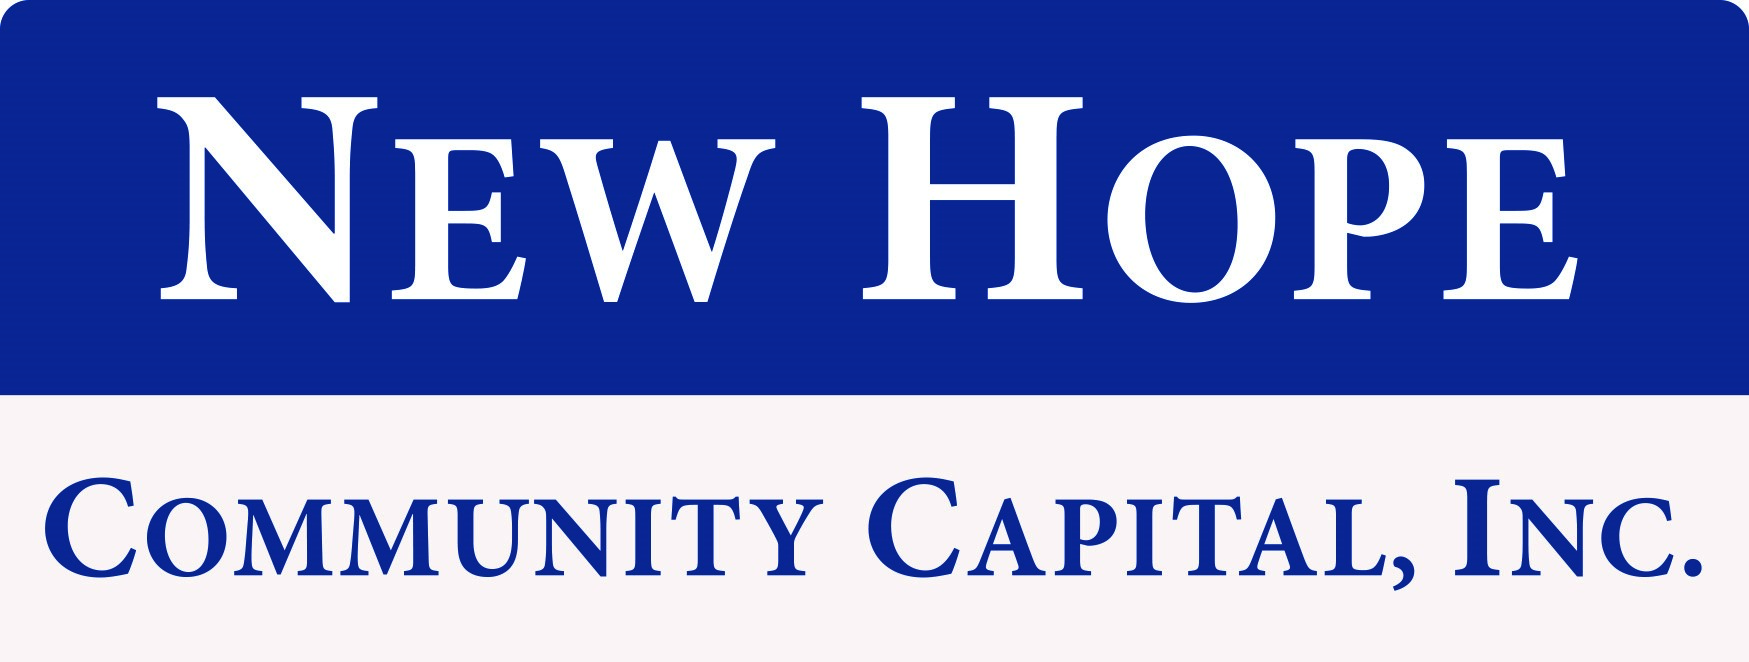 New Hope Community Capital, Inc.